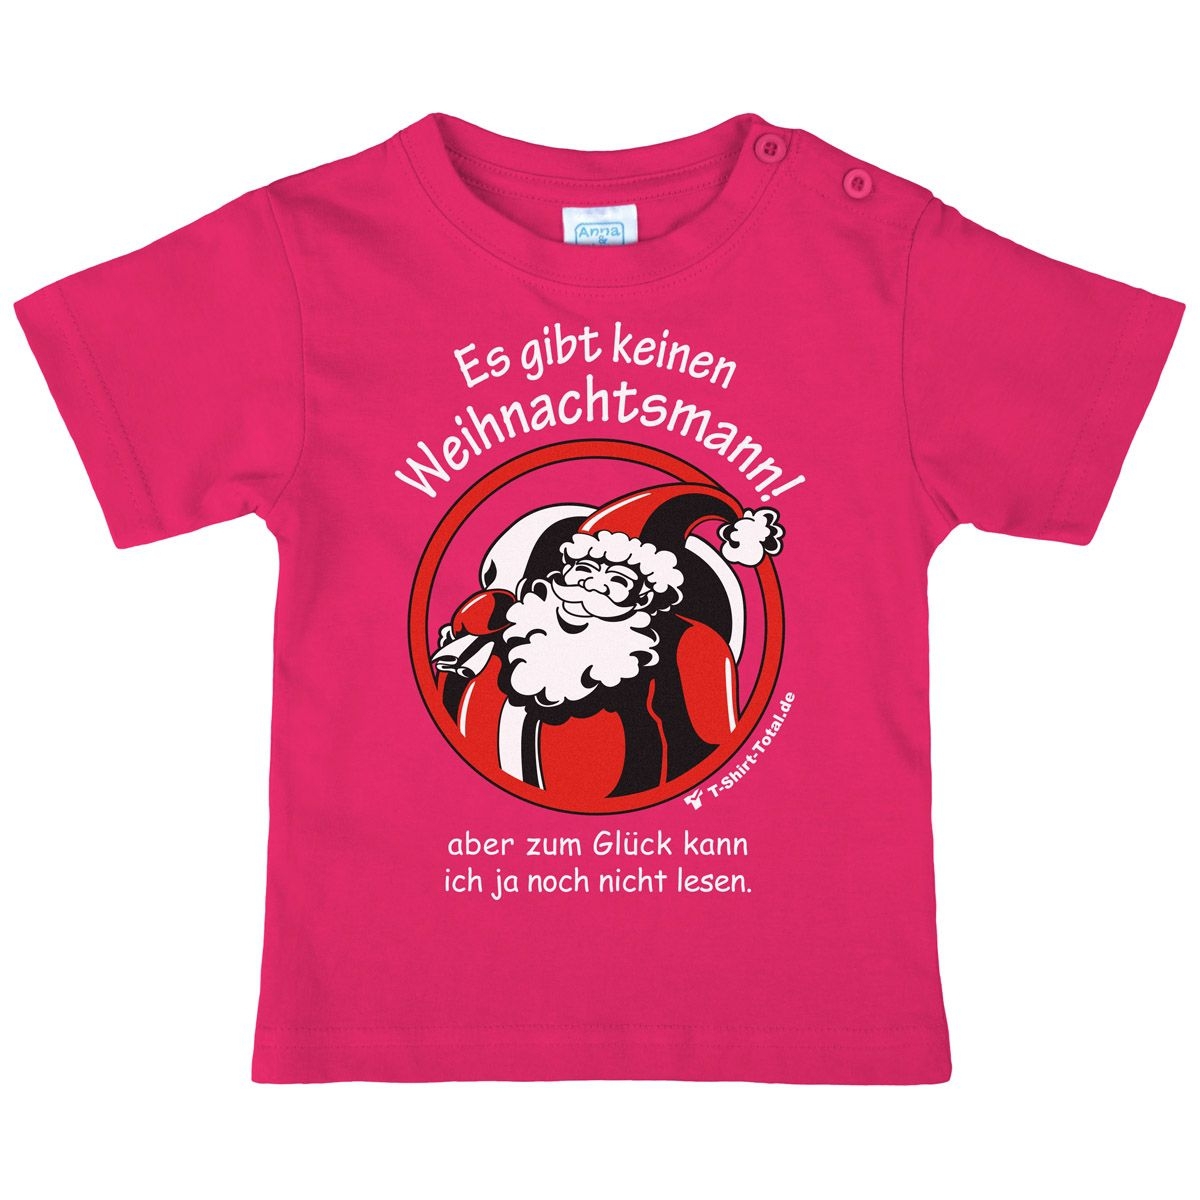 Gibt keinen Weihnachtsmann Kinder T-Shirt pink 80 / 86